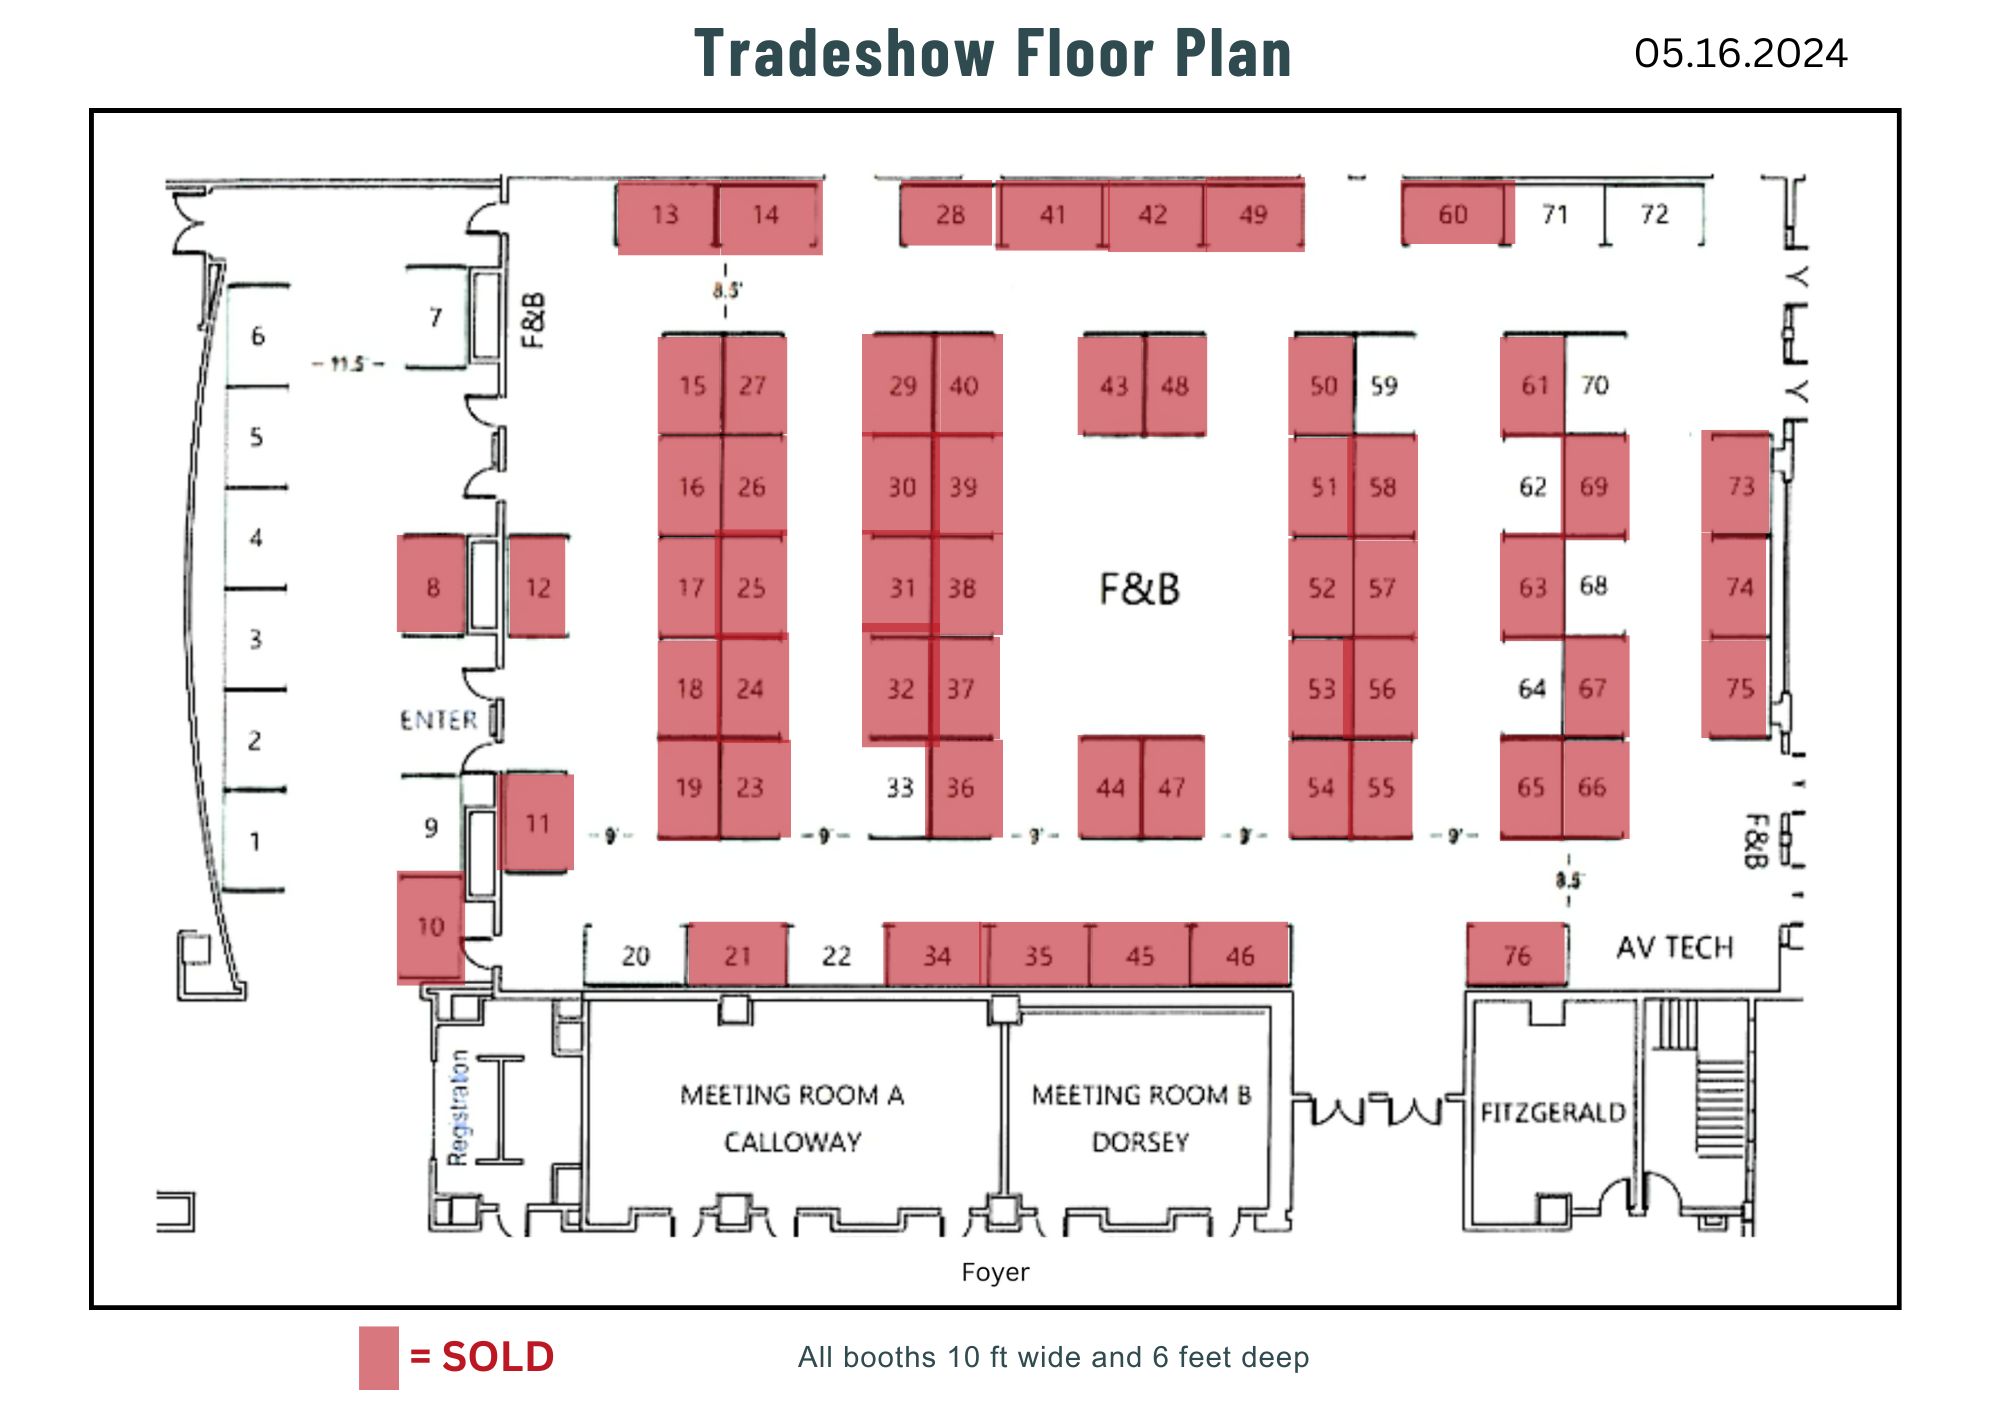 Trade Show 05.16.2024.jpg